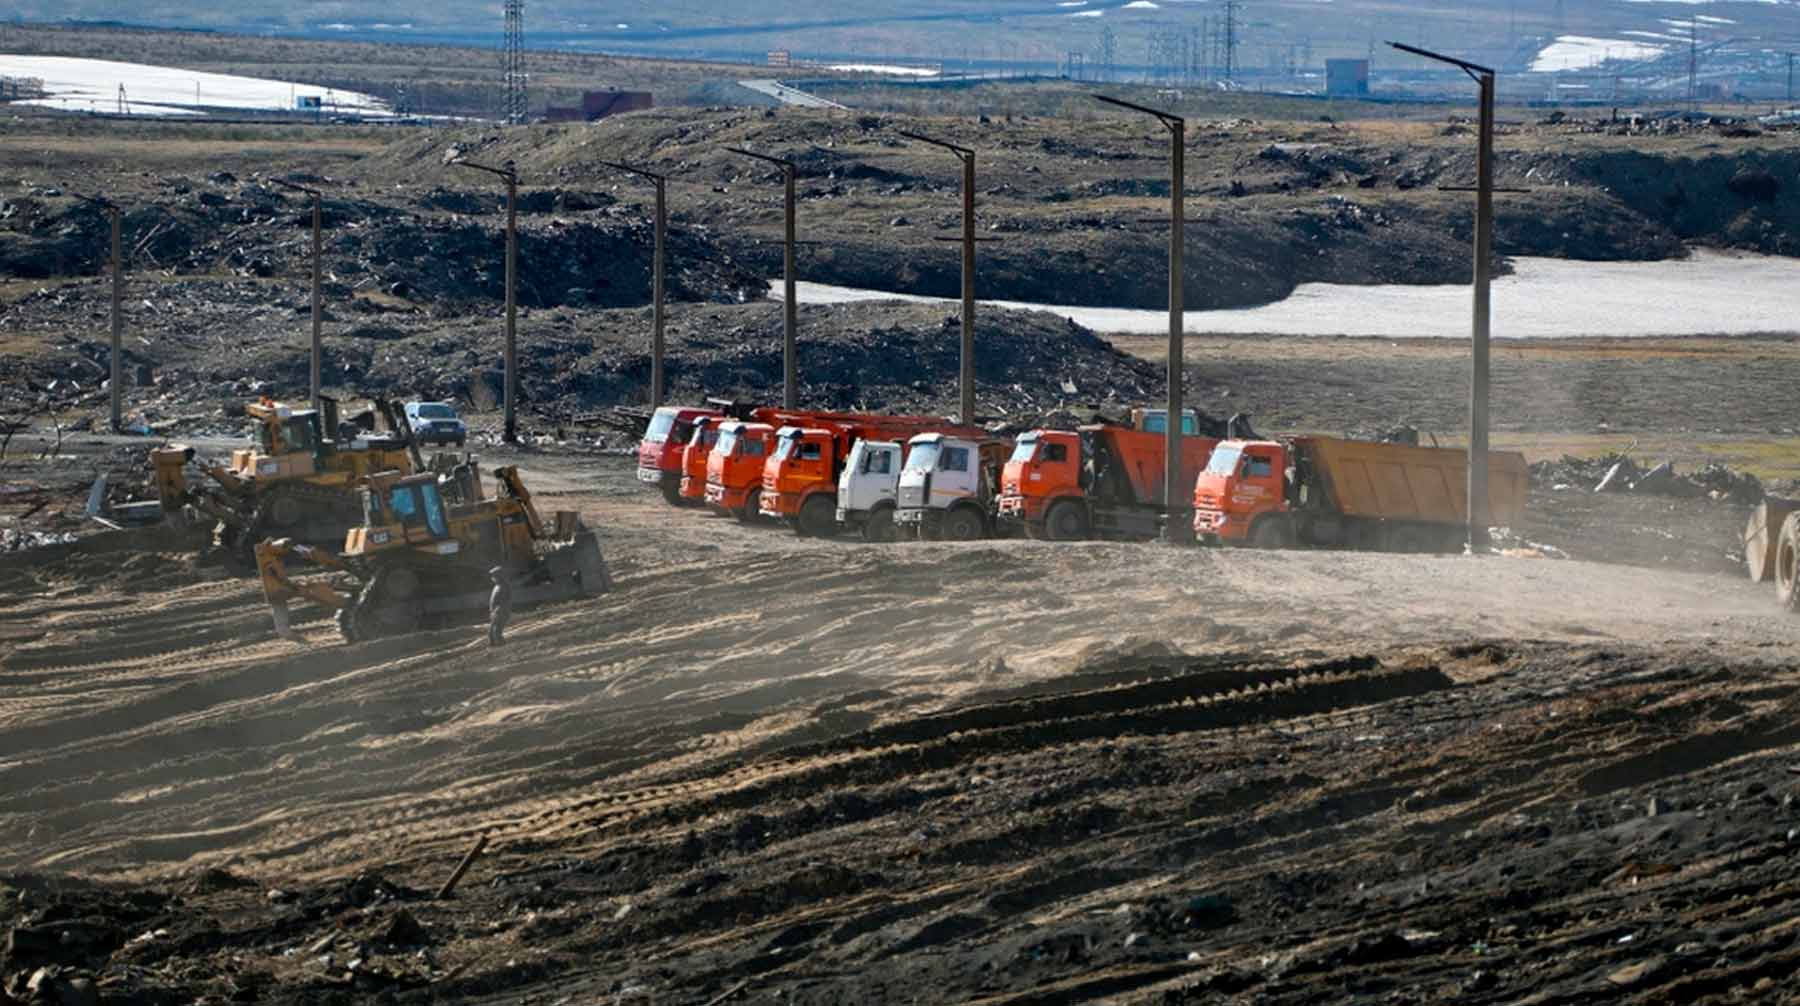 Неустановленных работников обвиняют в причинении вреда окружающей среде Фото: © Global Look Press